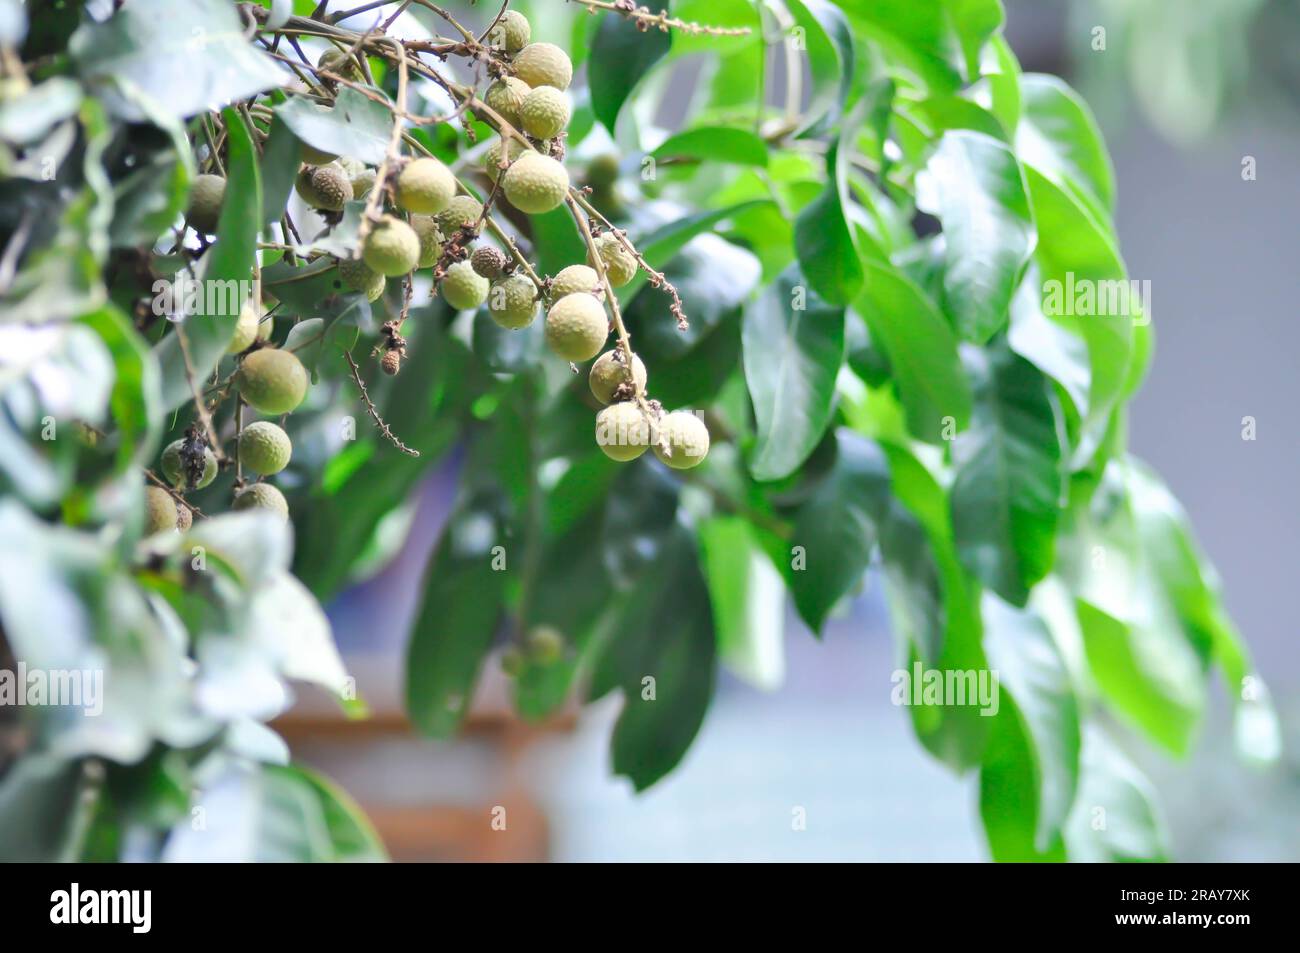 longan, thai fruit or Dimocarpus longan or longan tree in the orchard Stock Photo